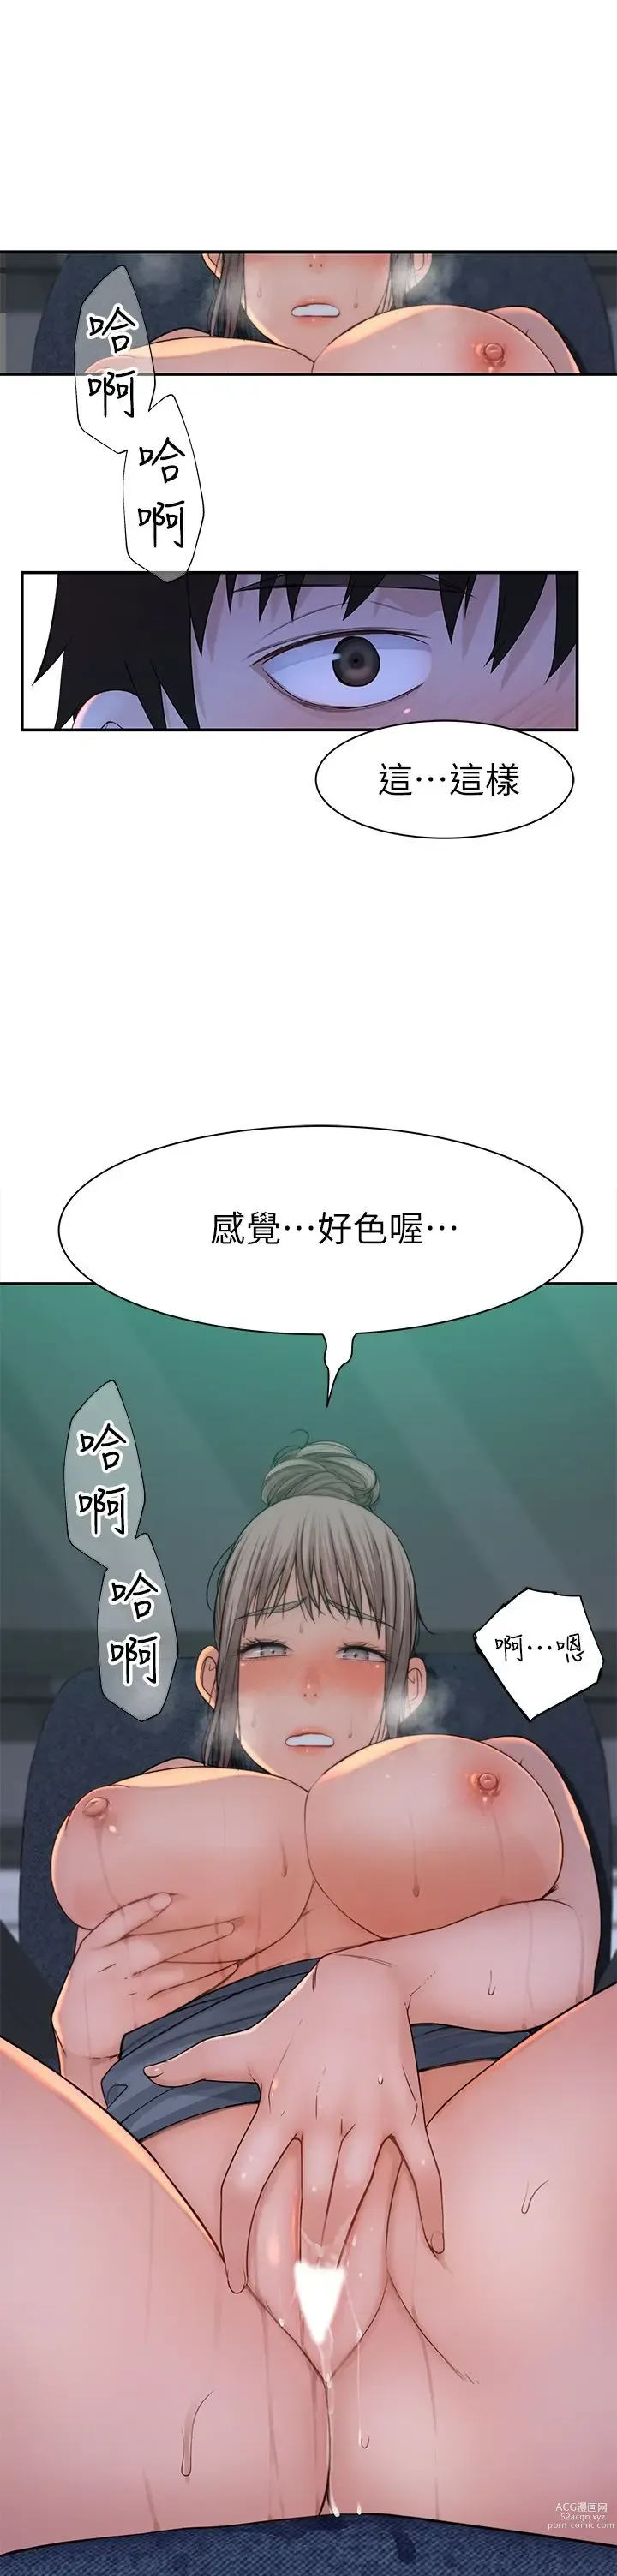 Page 3 of manga 我们的特殊关系／Between Us [中文] [已完结]（下）